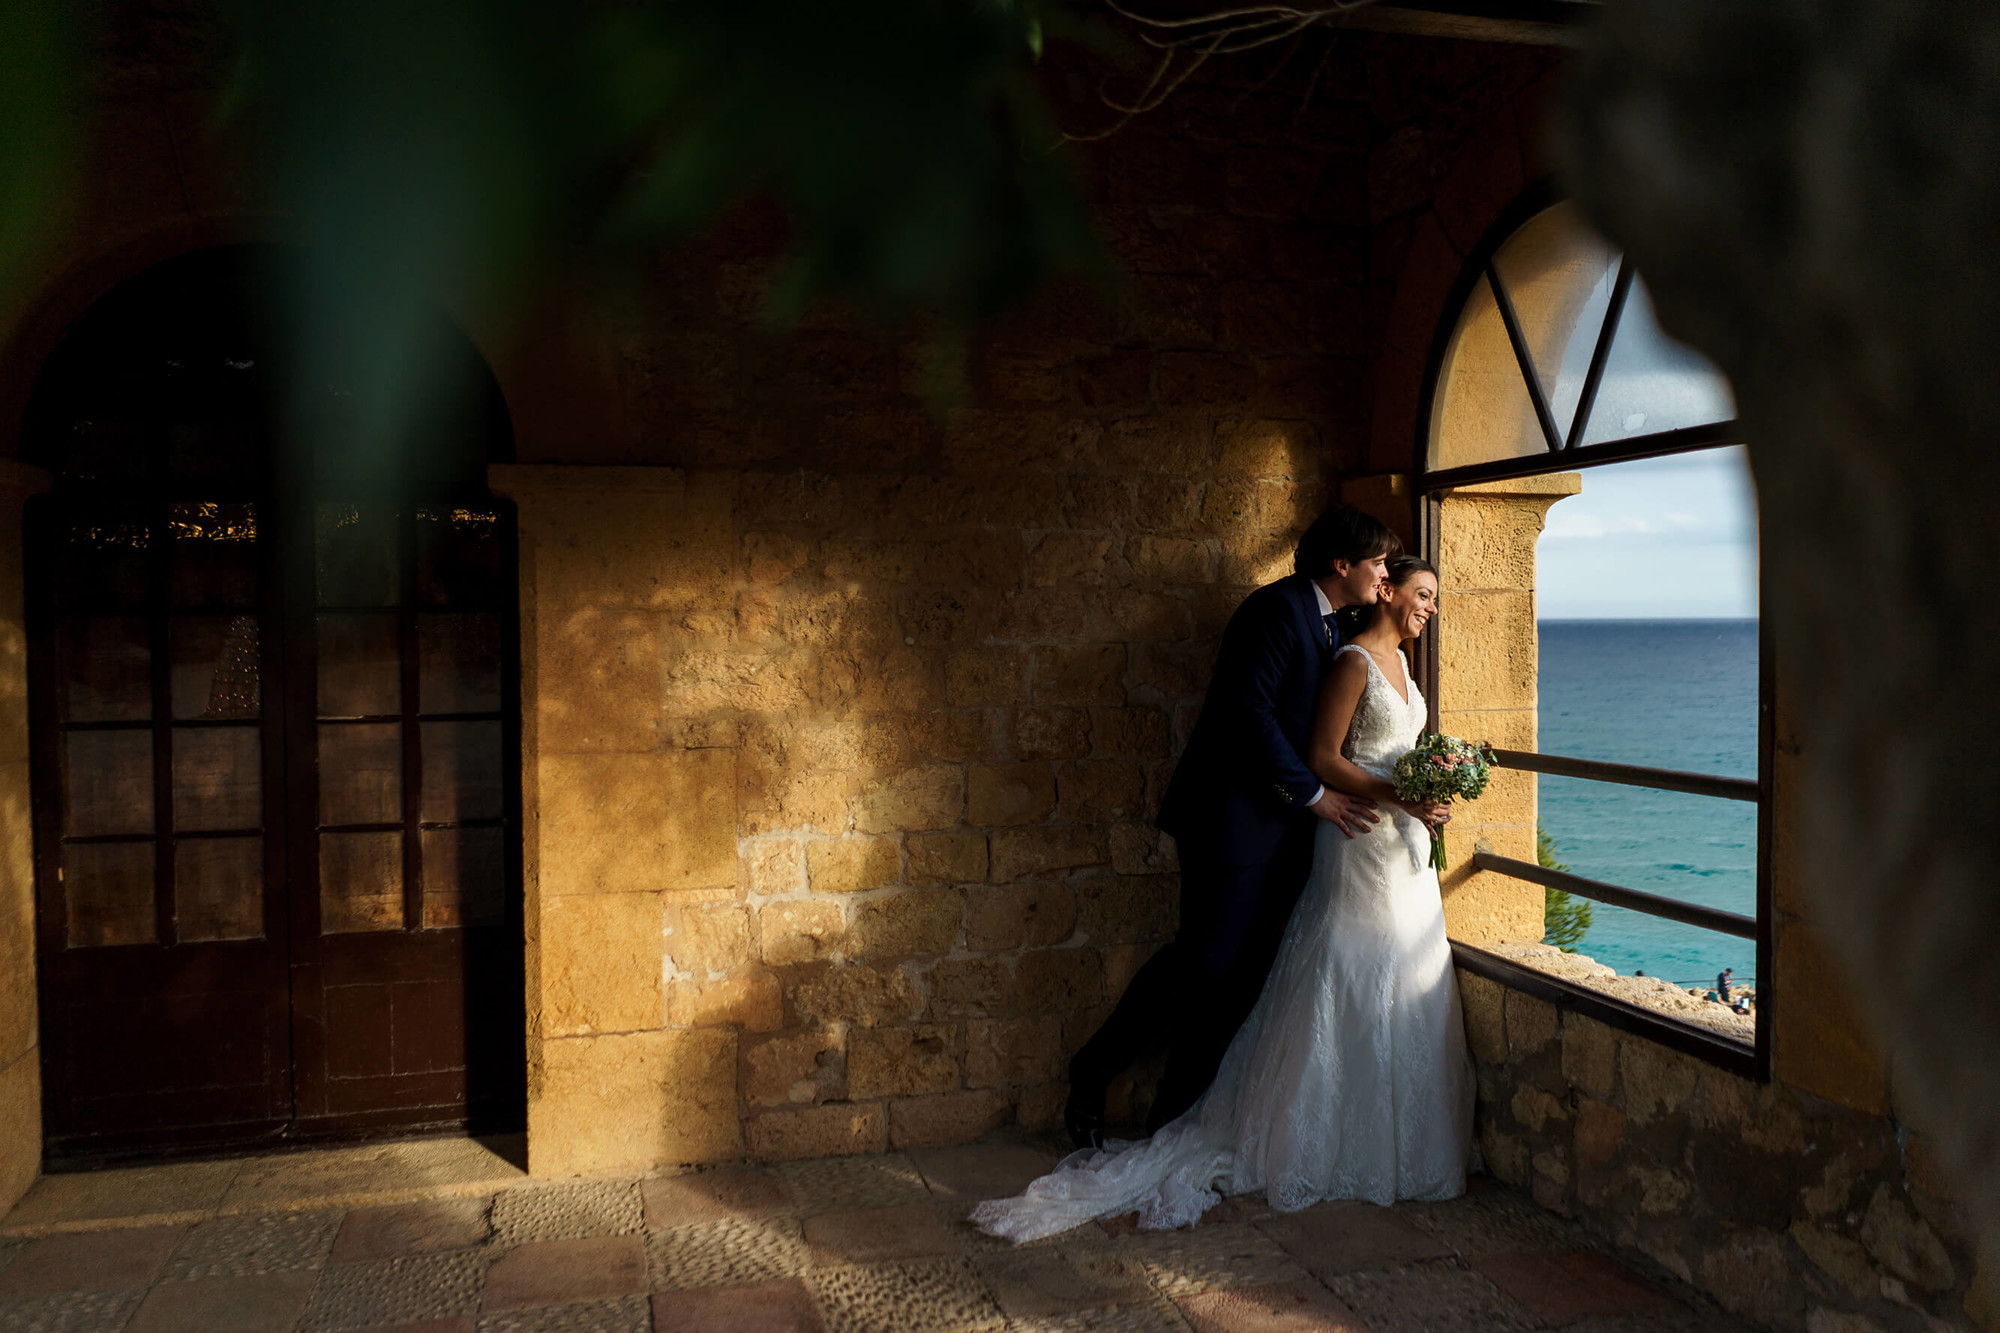 Sessió de parella davant del mar a la boda al Castell de Tamarit.